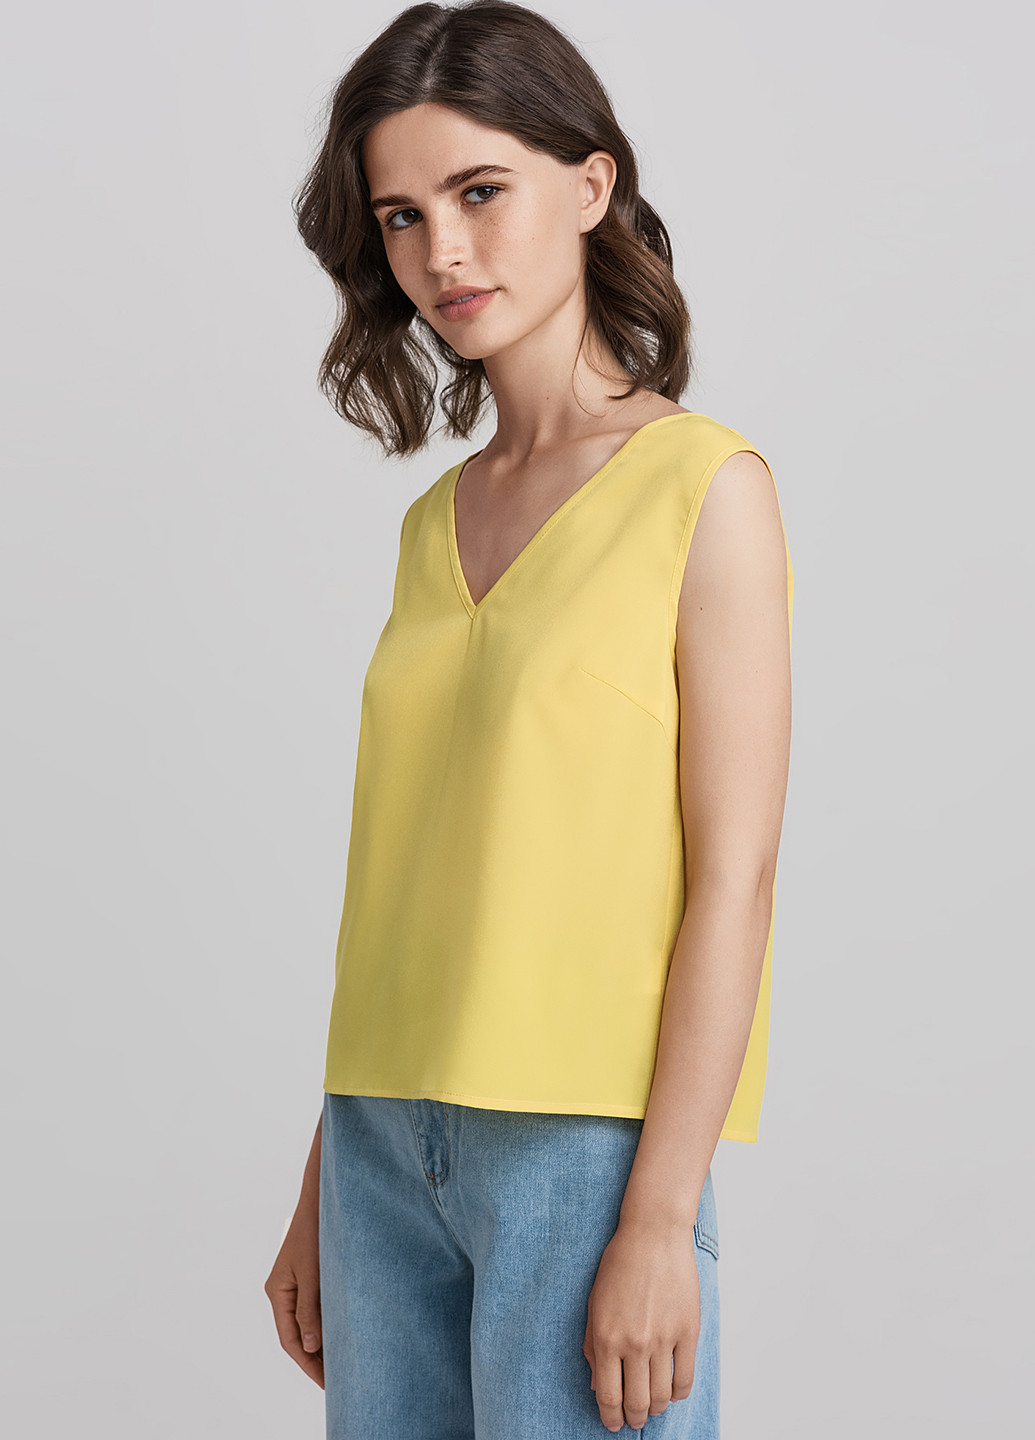 Желтая летняя блузка befree